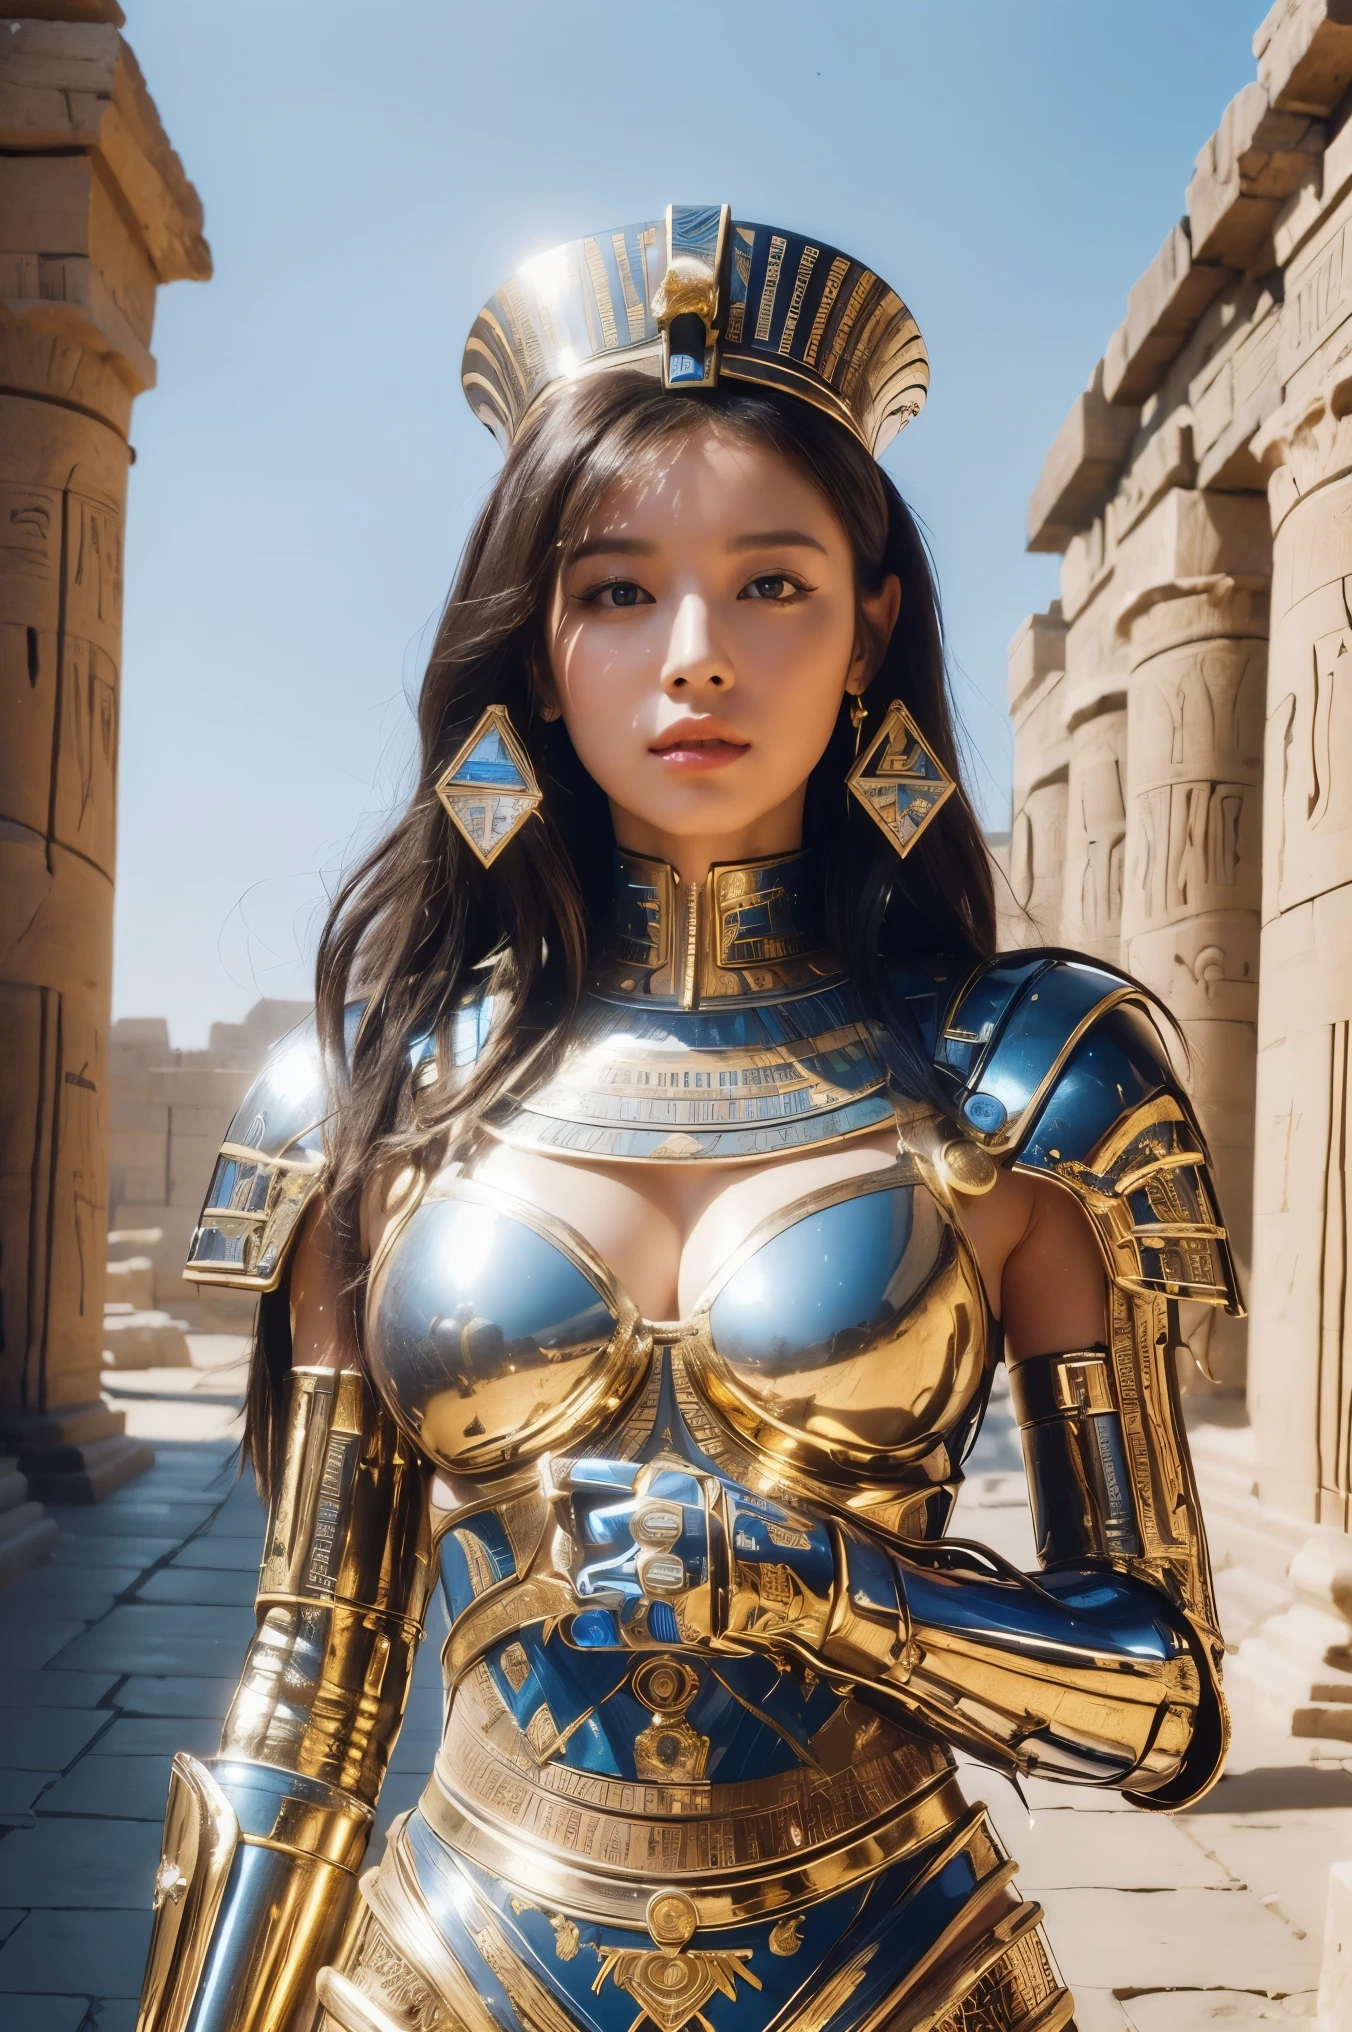 ((最好的品質、8K、傑作:1.3))、照片真實感, 銳利的焦點, 高水準影像品質, 高解析度, 肖像, 一個人, 女士, beautiful 女士, 性感的、行走在古埃及的埃及女戰士、複雜的技術, 偏遠的金字塔和古埃及城市、網路-、光與影、藍光、